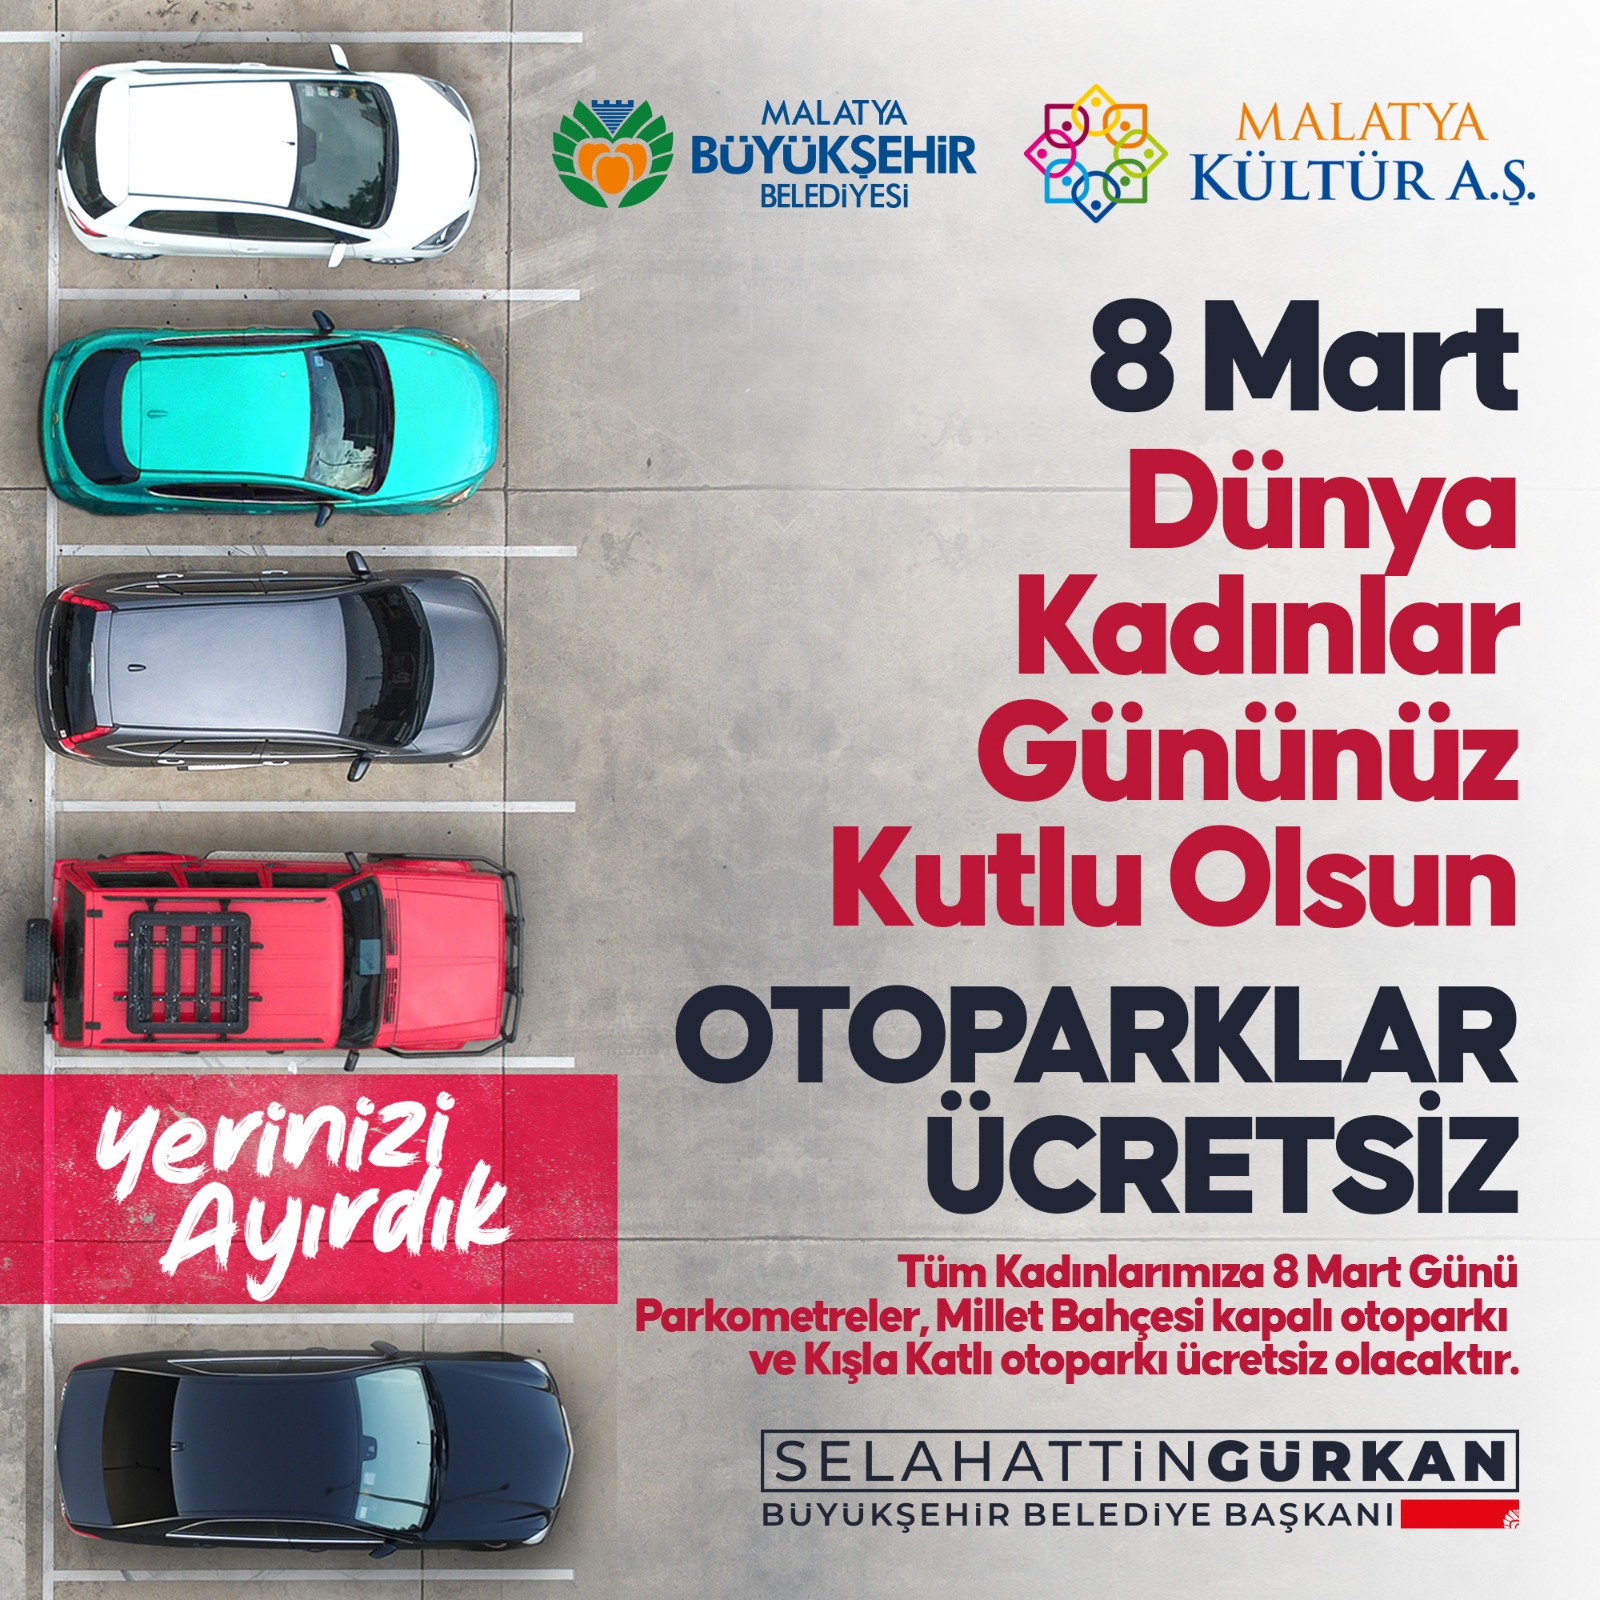 Malatya Büyükşehir Belediyesinden kadınlara jest